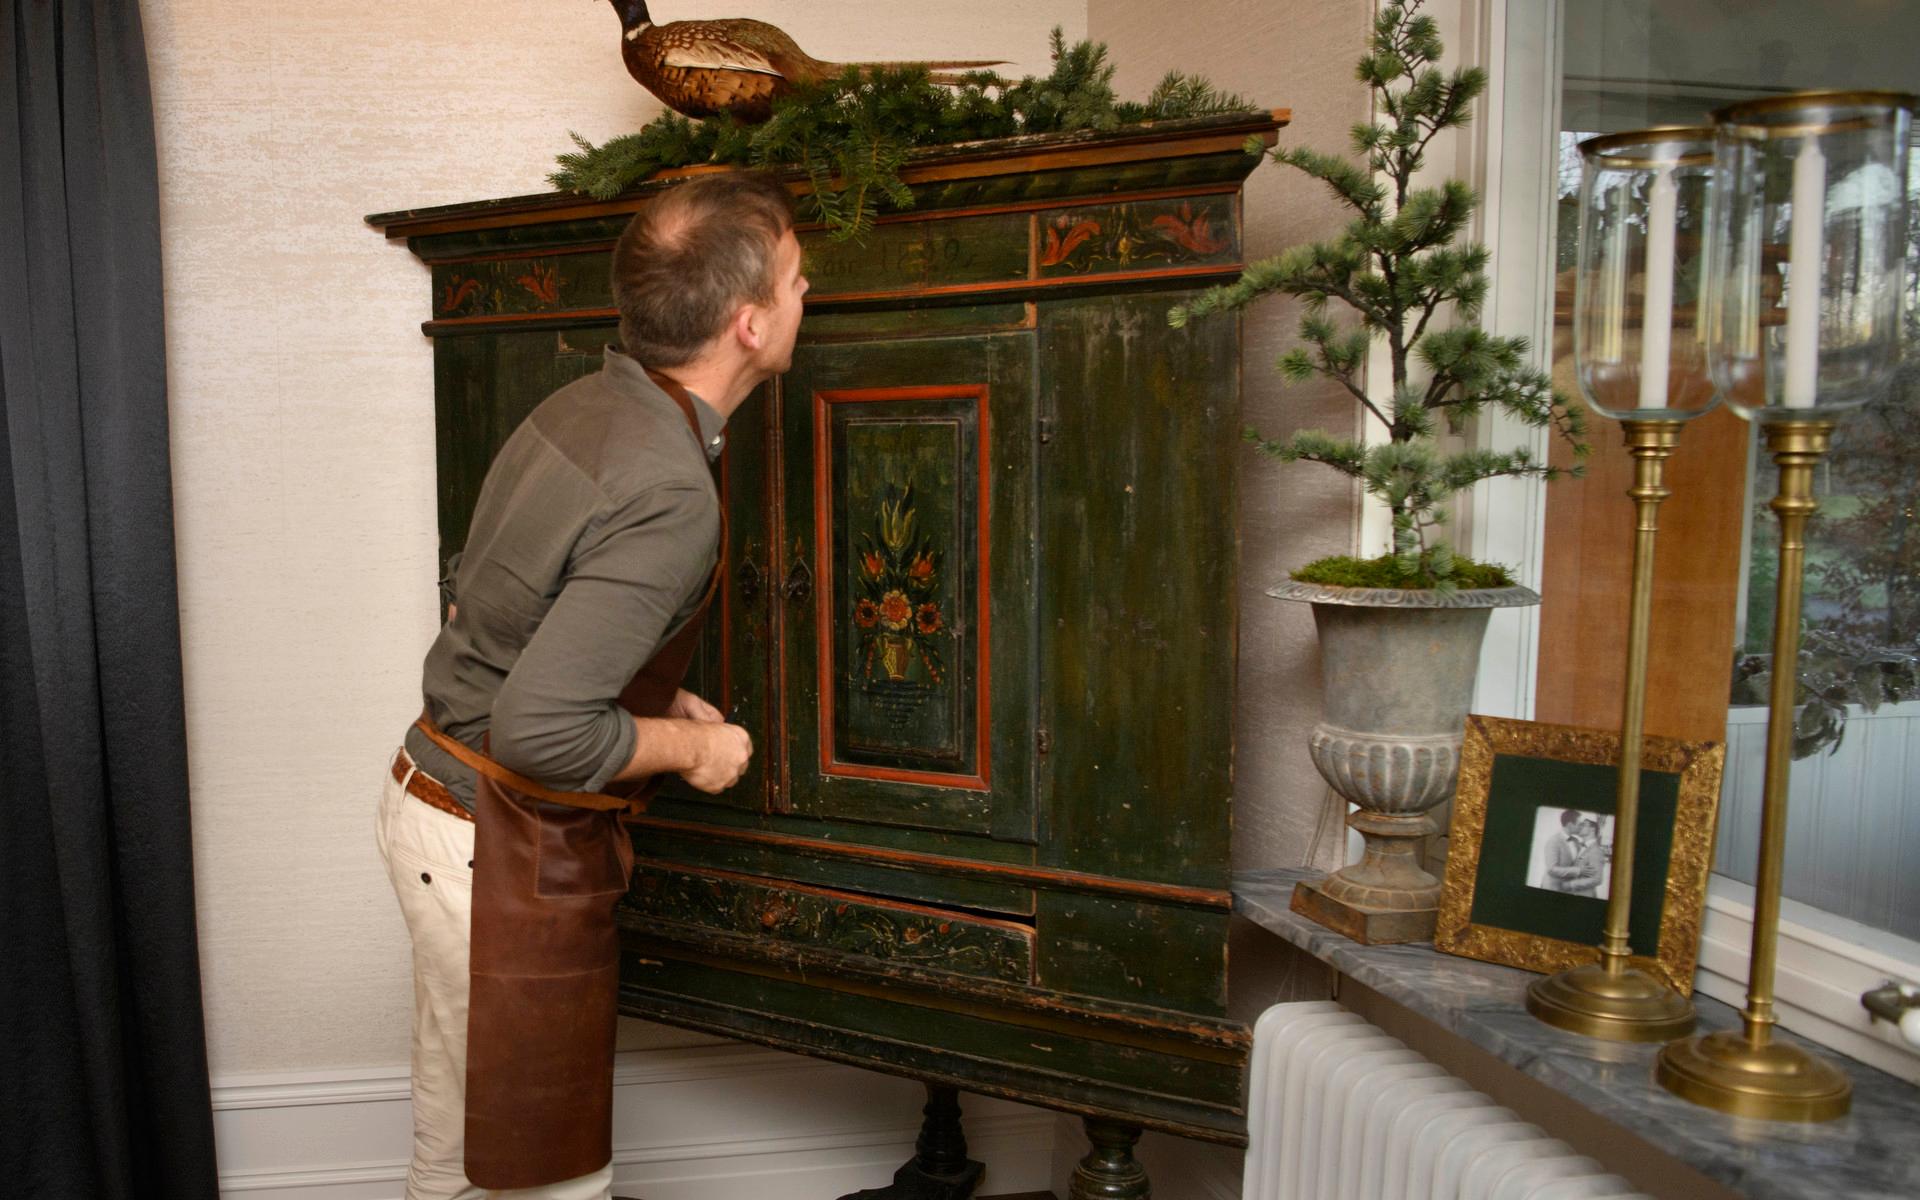 Det gamla skåpet från Philips föräldrahem är en av de äldsta möblerna på gården, berättar Alexander.